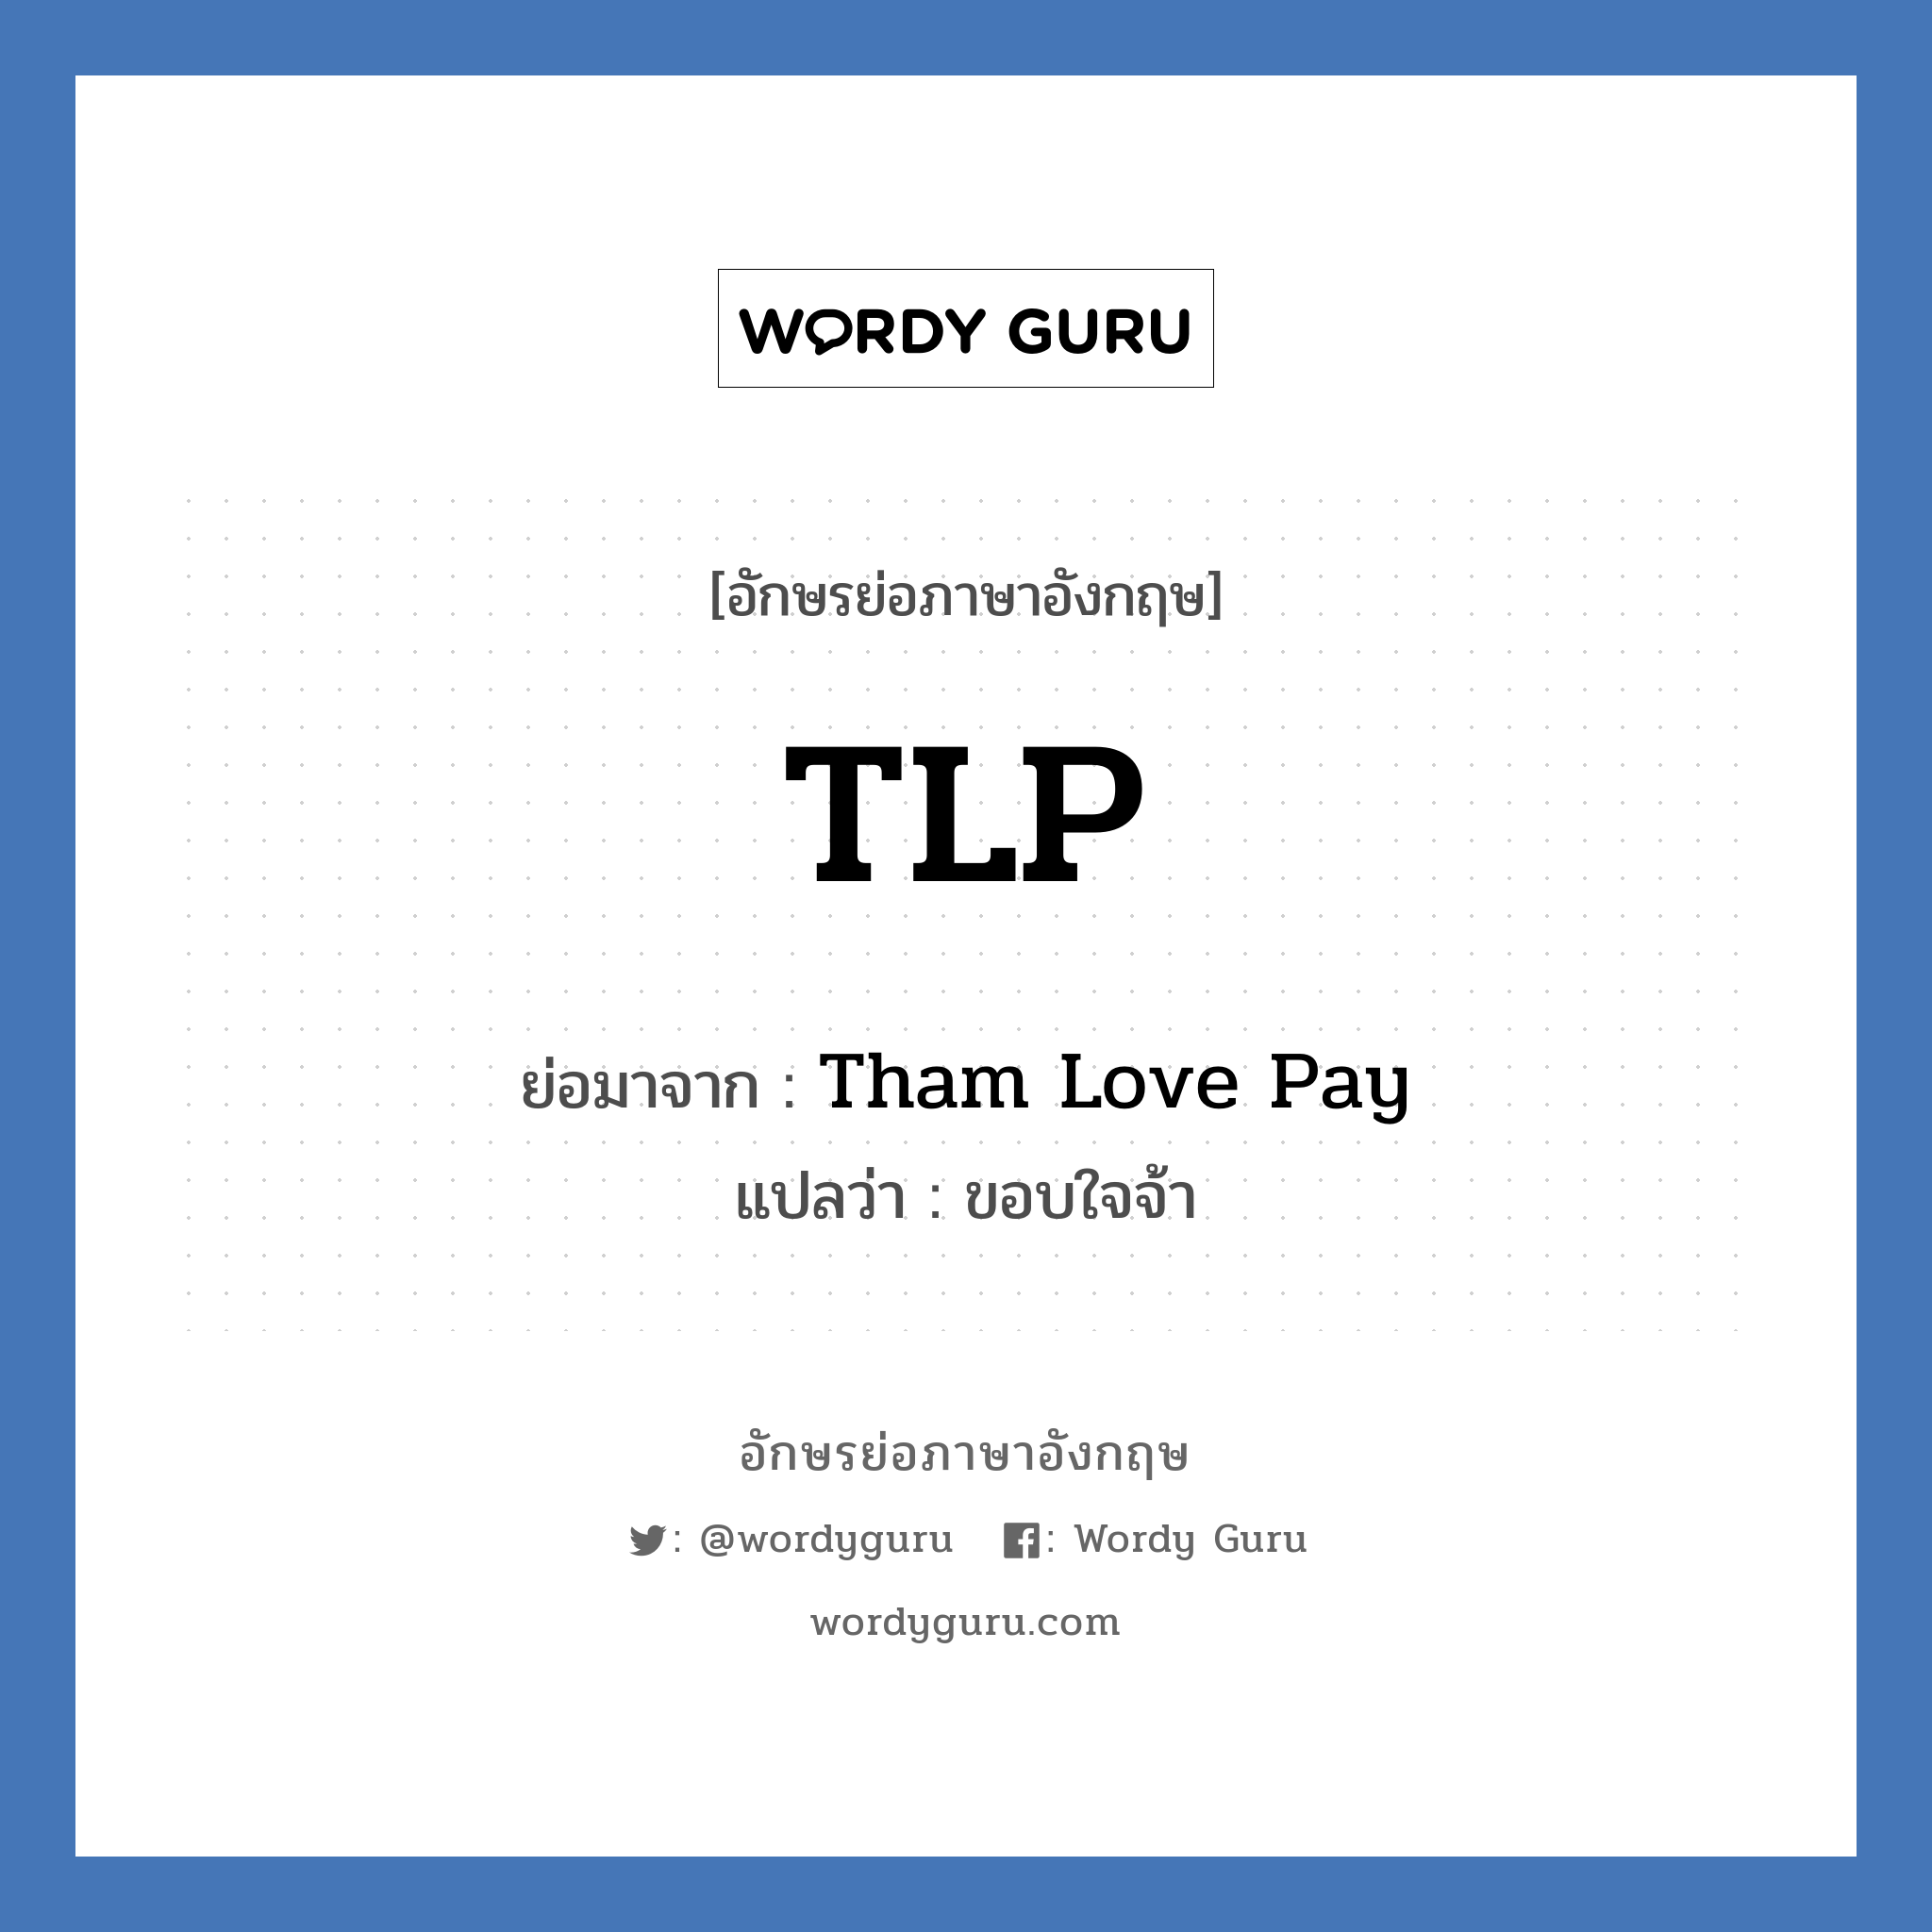 Tham Love Pay คำย่อคือ? แปลว่า?, อักษรย่อภาษาอังกฤษ Tham Love Pay ย่อมาจาก TLP แปลว่า ขอบใจจ้า